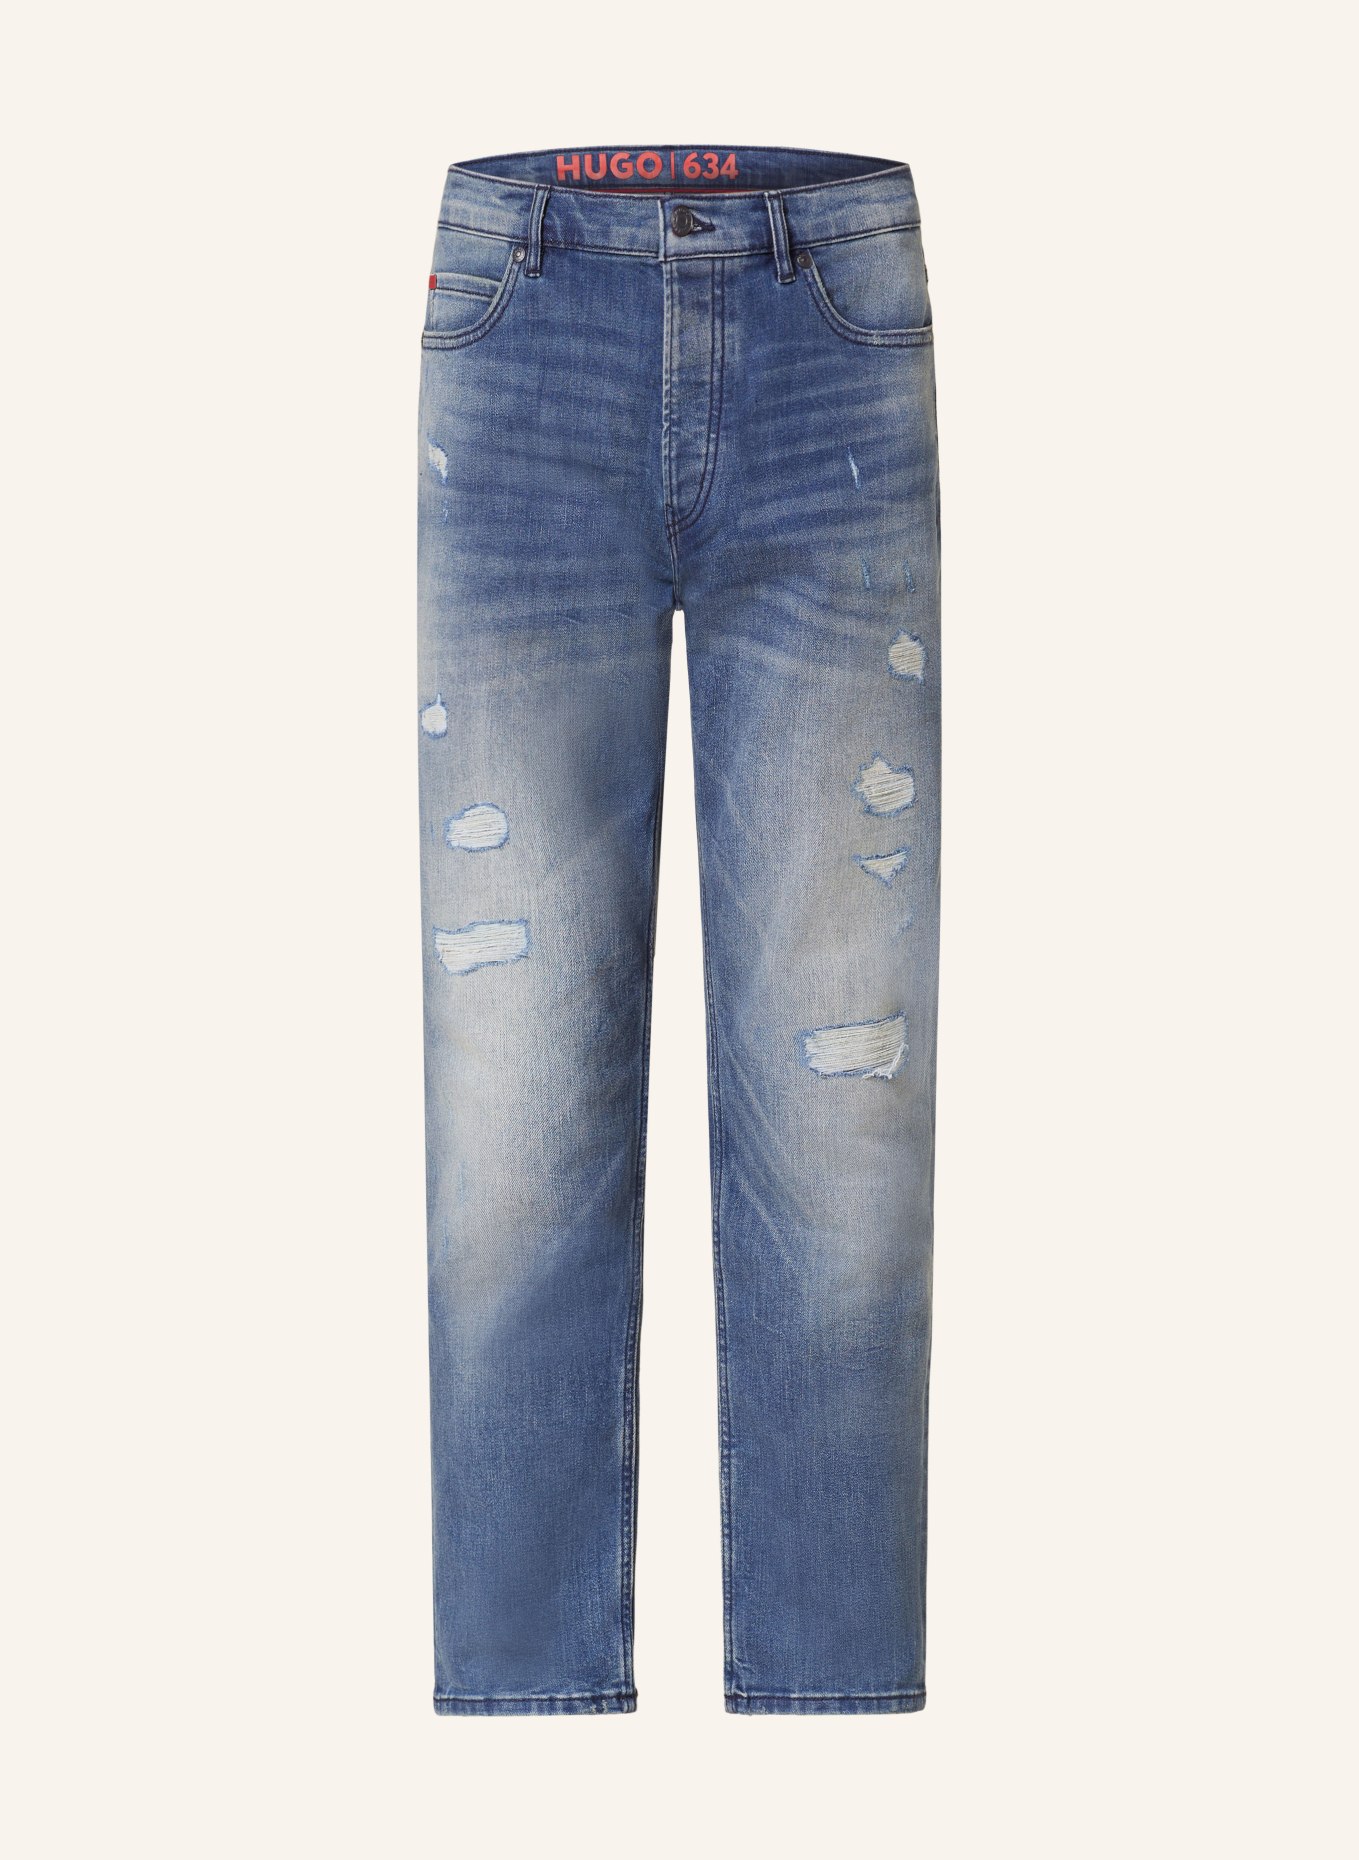 HUGO Jeans HUGO 634 tapered fit, Color: 432 BRIGHT BLUE (Image 1)